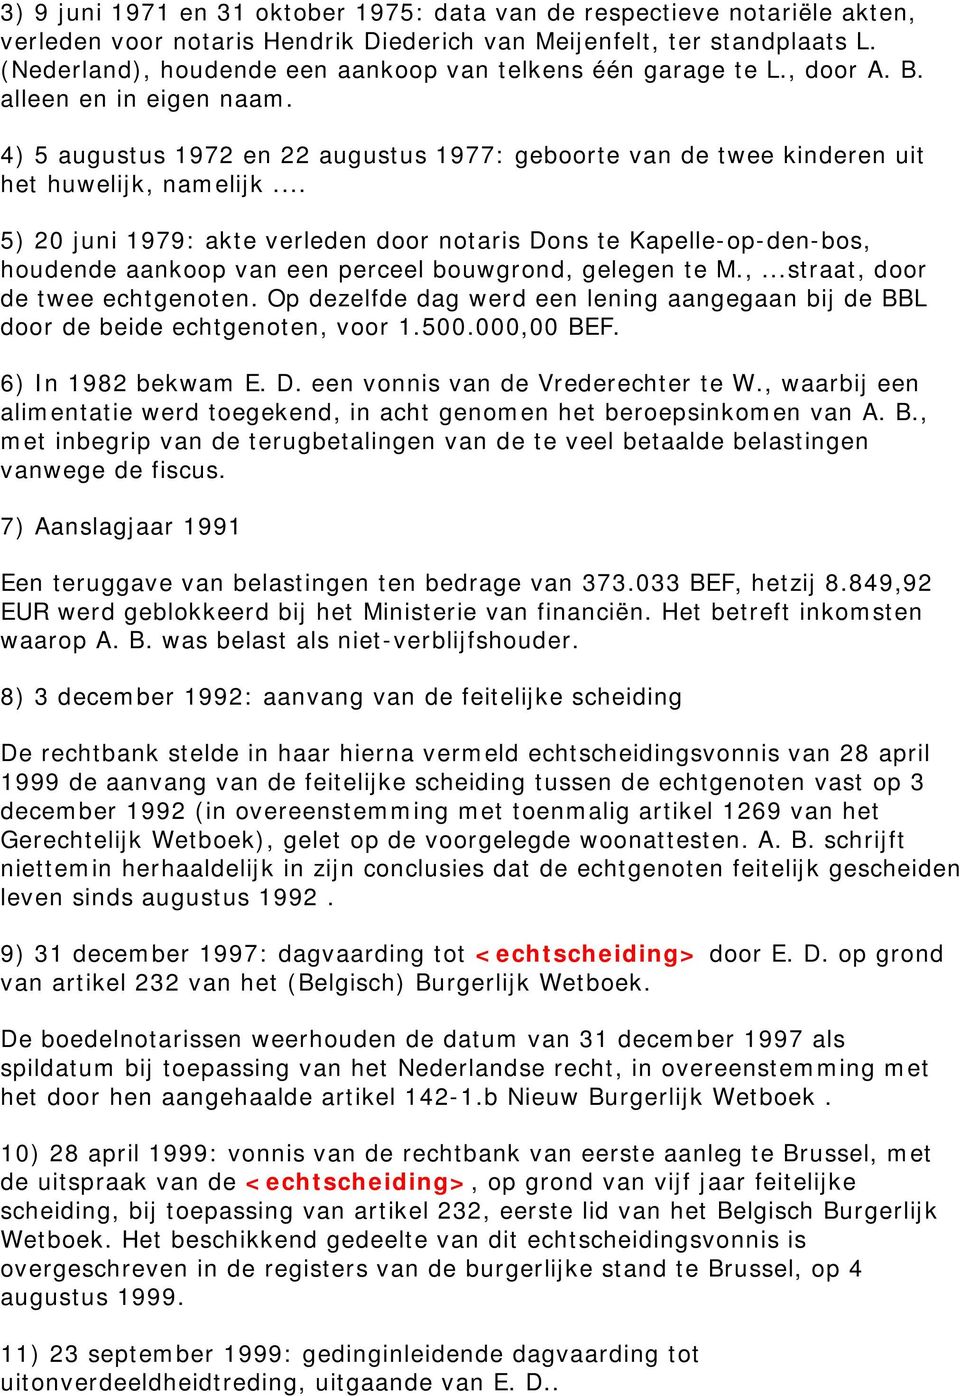 .. 5) 20 juni 1979: akte verleden door notaris Dons te Kapelle-op-den-bos, houdende aankoop van een perceel bouwgrond, gelegen te M.,...straat, door de twee echtgenoten.